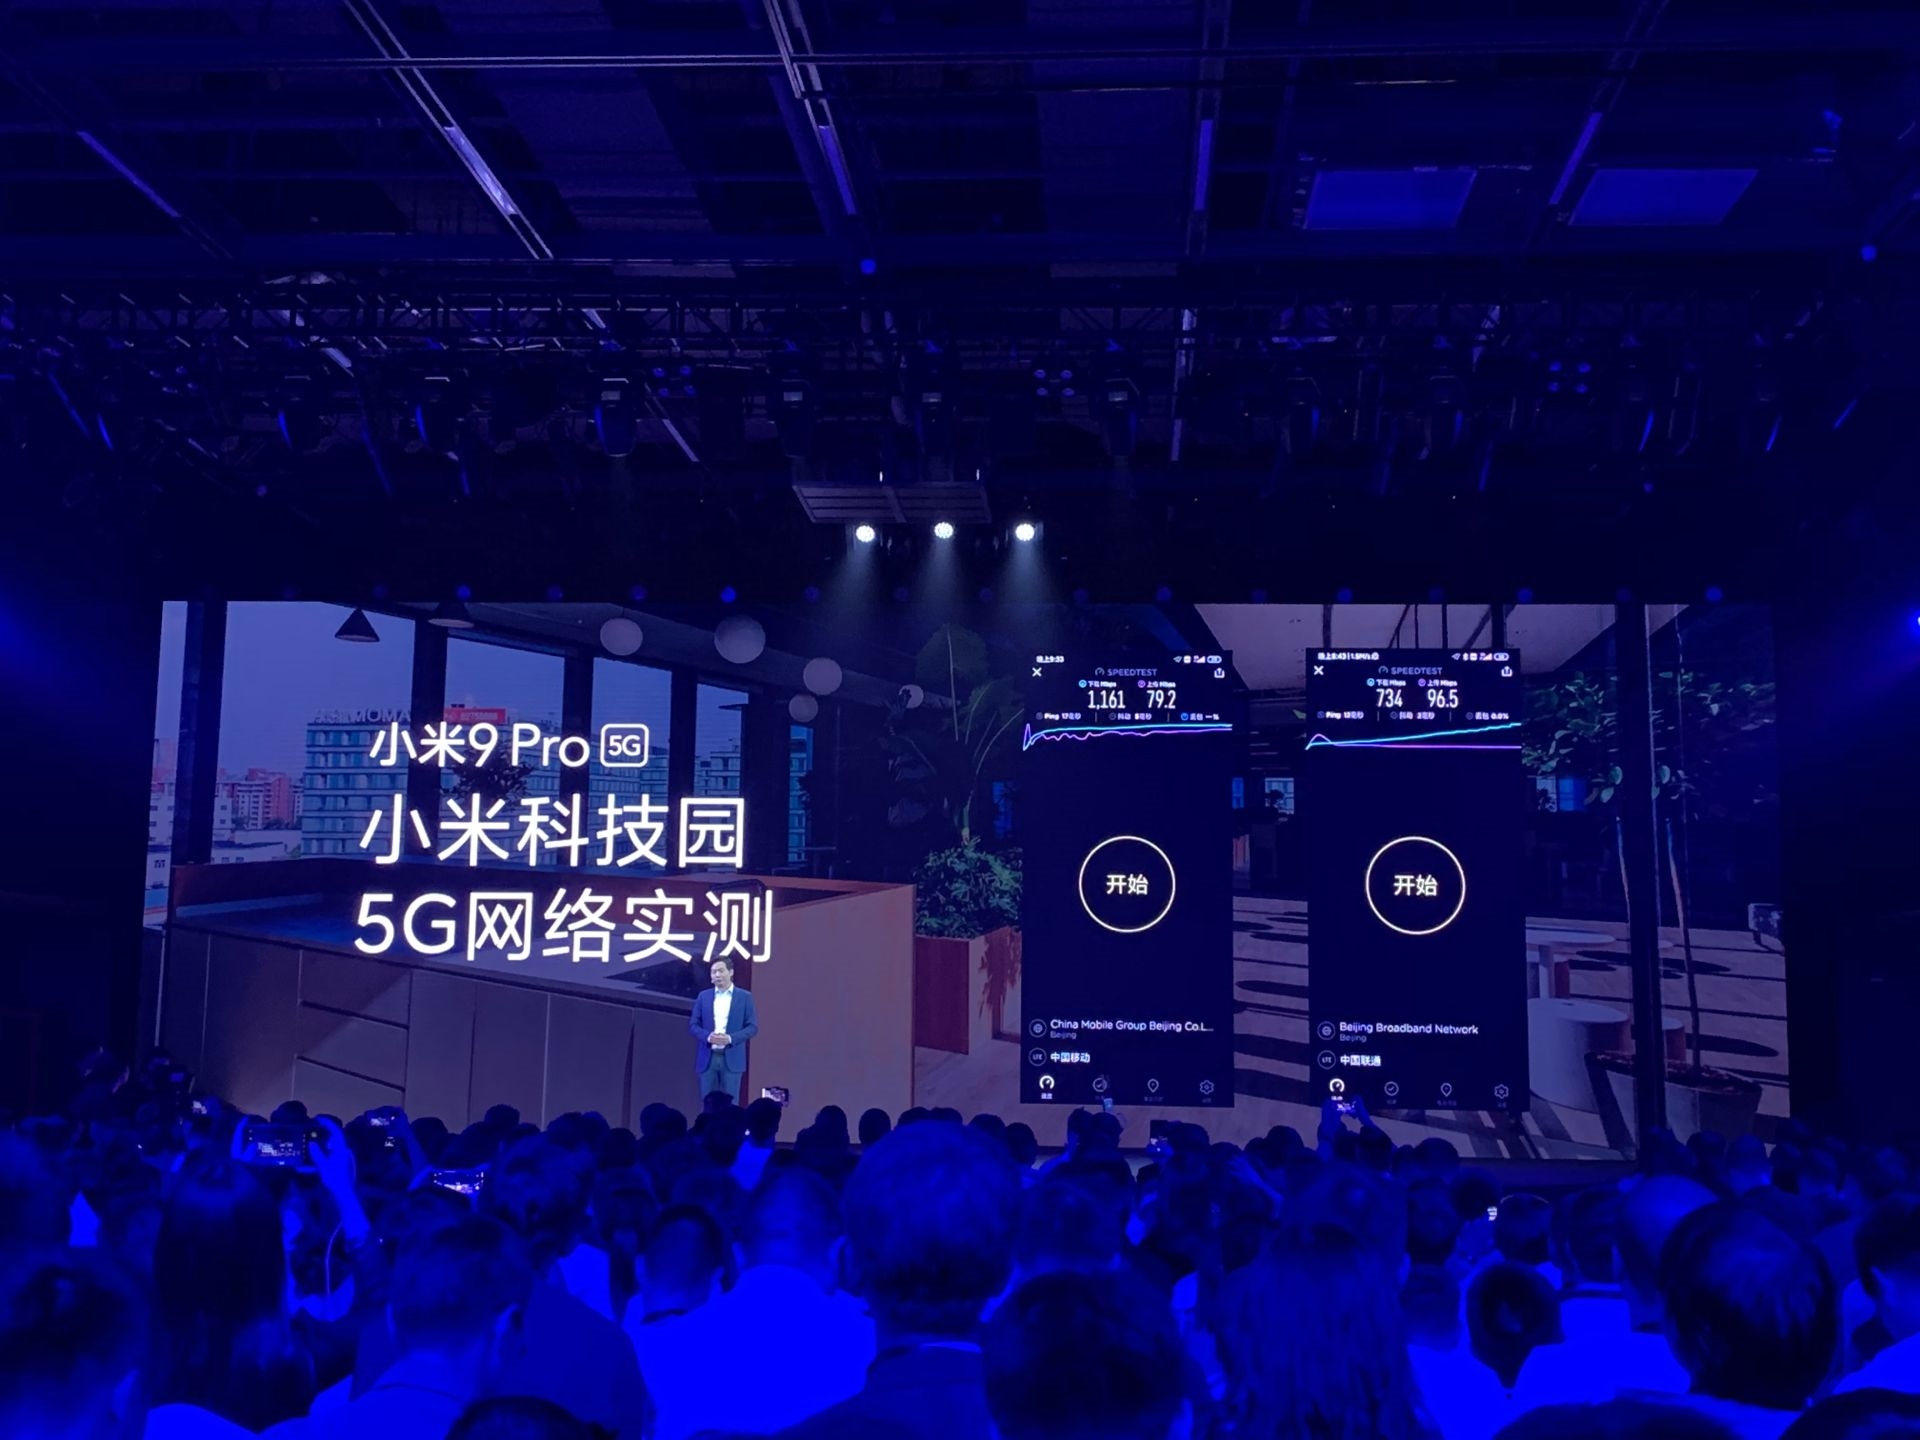 Xiaomi Mi 9 Pro 5G chính thức trình làng khiến người dùng công nghệ phấn khíc